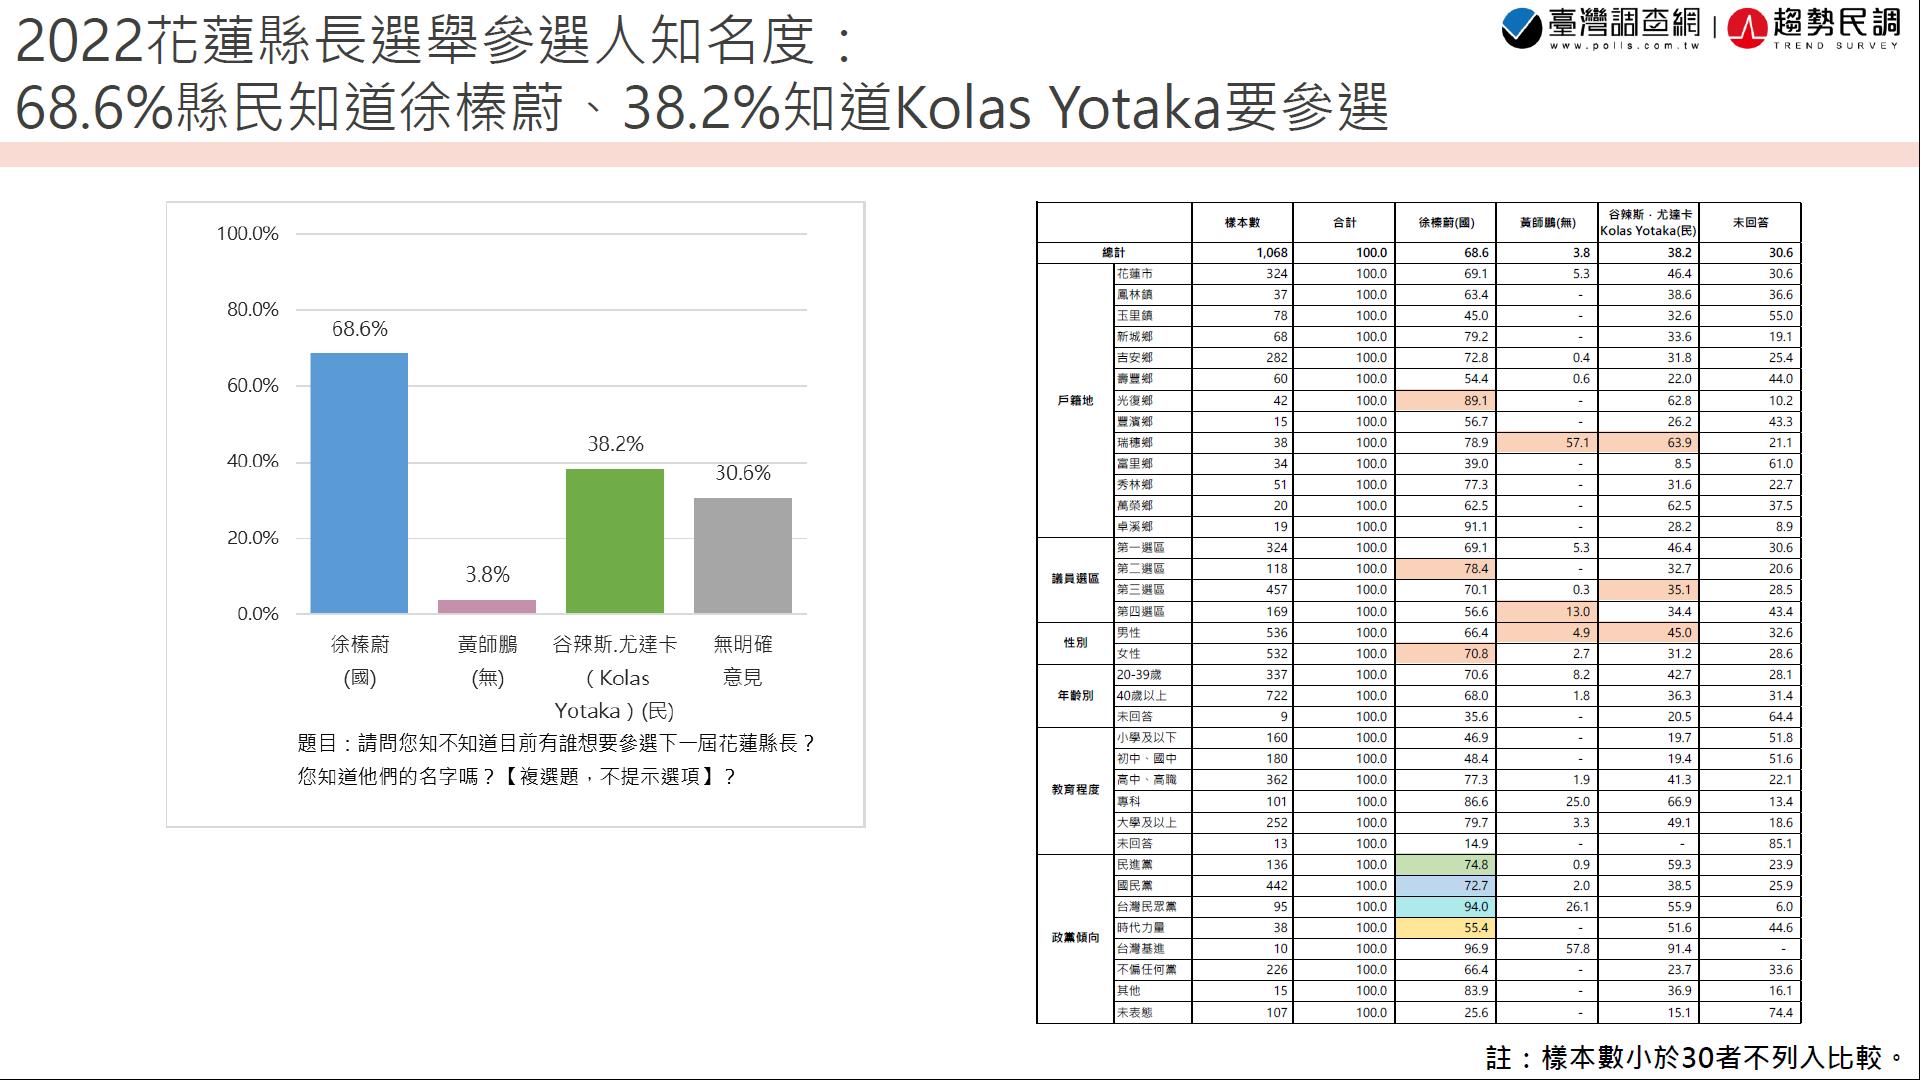 【匯流民調2022縣市長系列3-1】徐榛蔚獲花蓮縣民56.1%支持度 大贏Kolas Yotaka的17.4% 兩人差距38.7個百分點